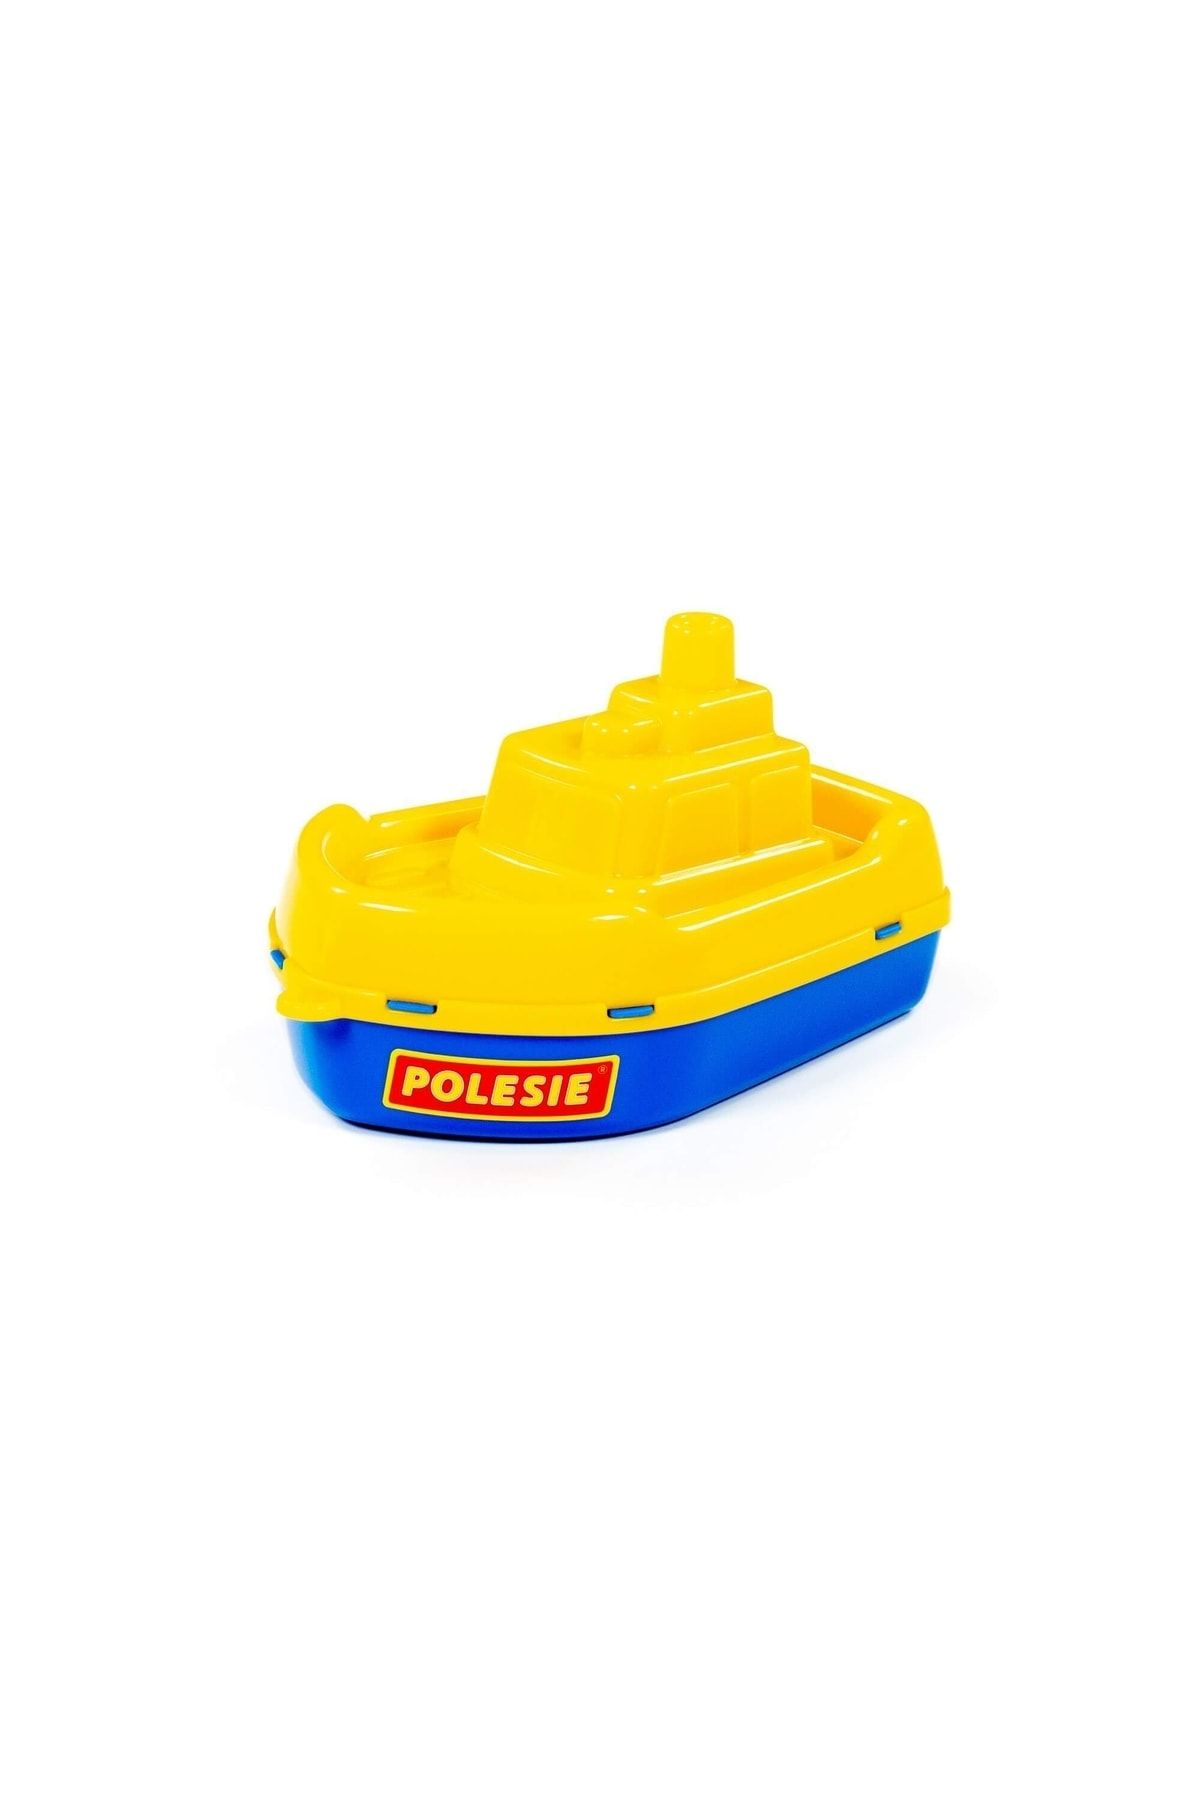 Polesie 36537 Oyuncak Buksir Gemi